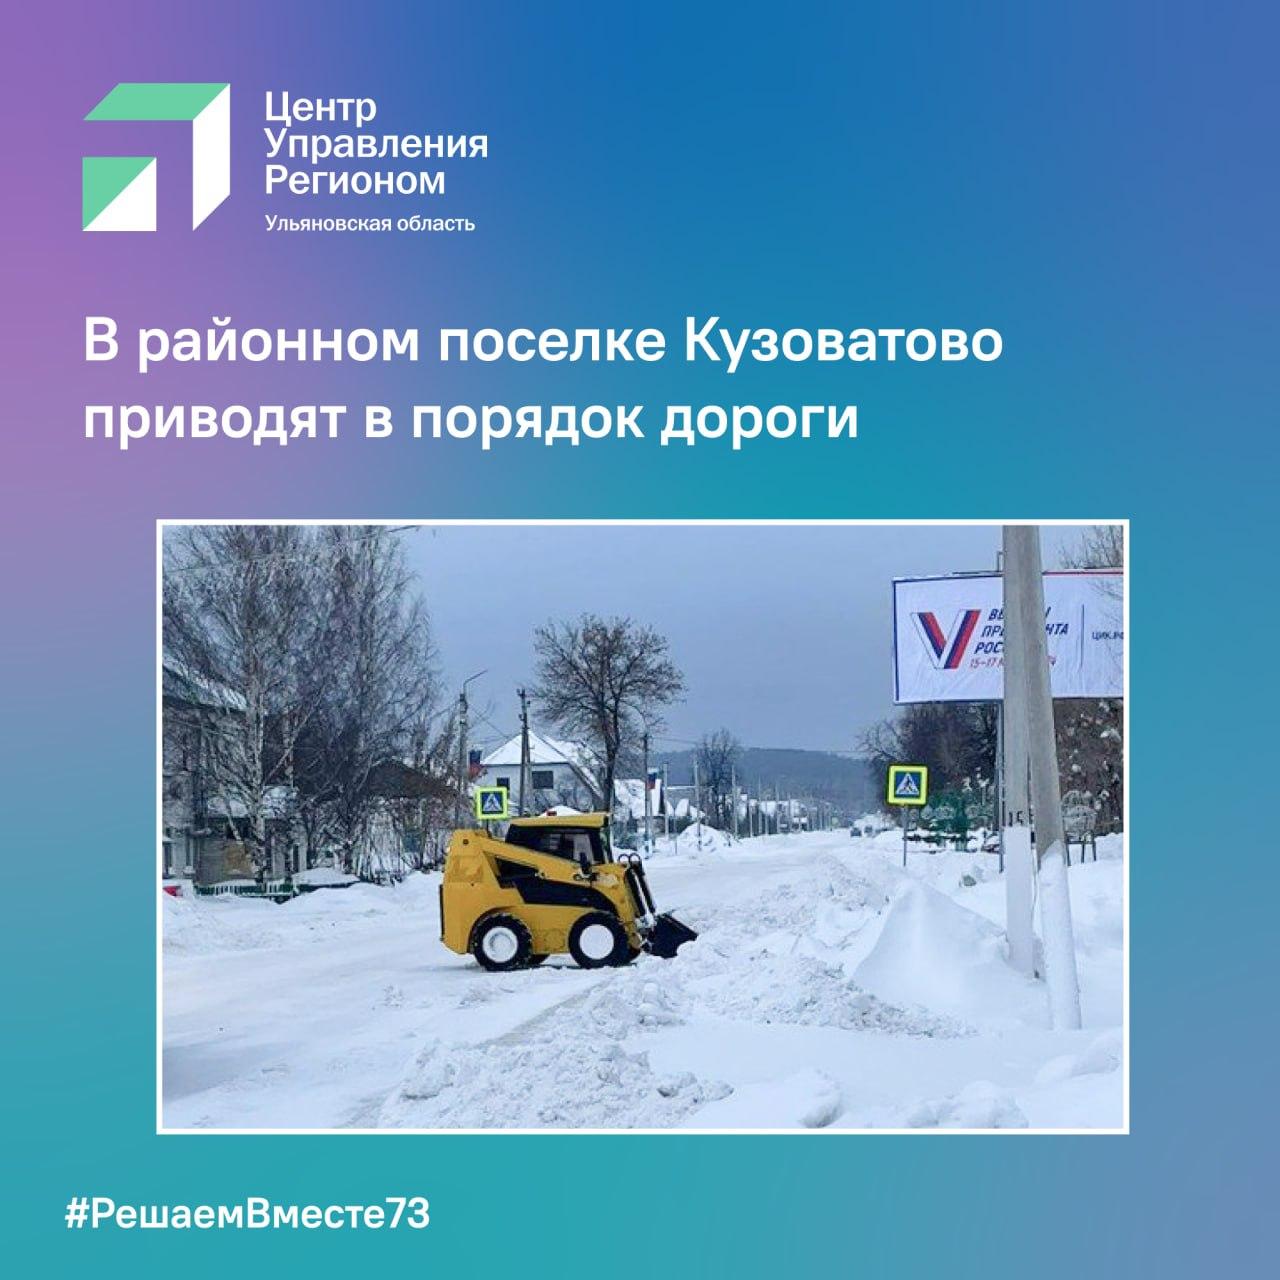 В районном поселке Кузоватово приводят в порядок дороги.